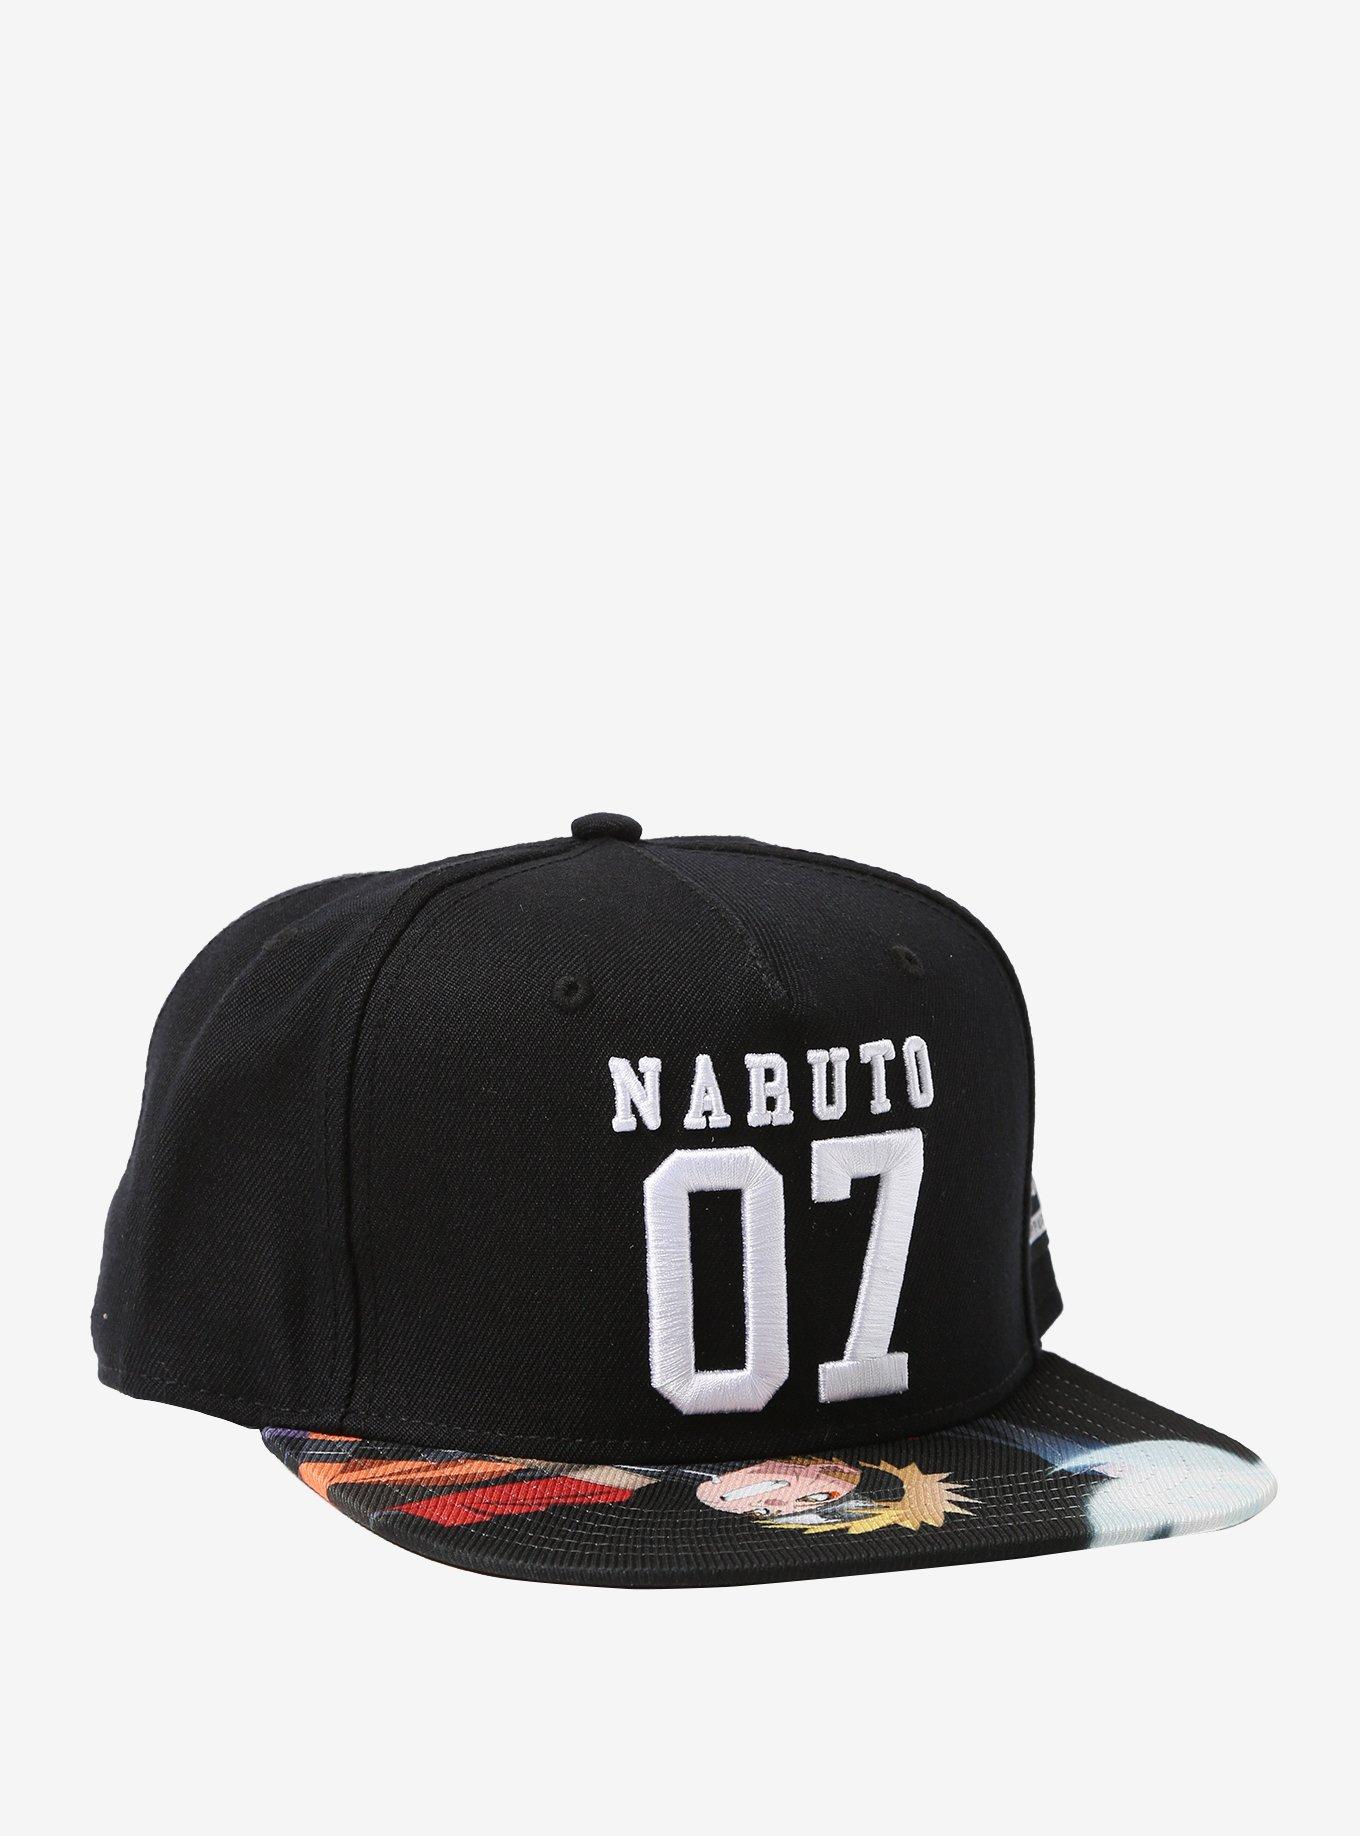 Naruto Shippuden 07 Snapback Hat, , hi-res